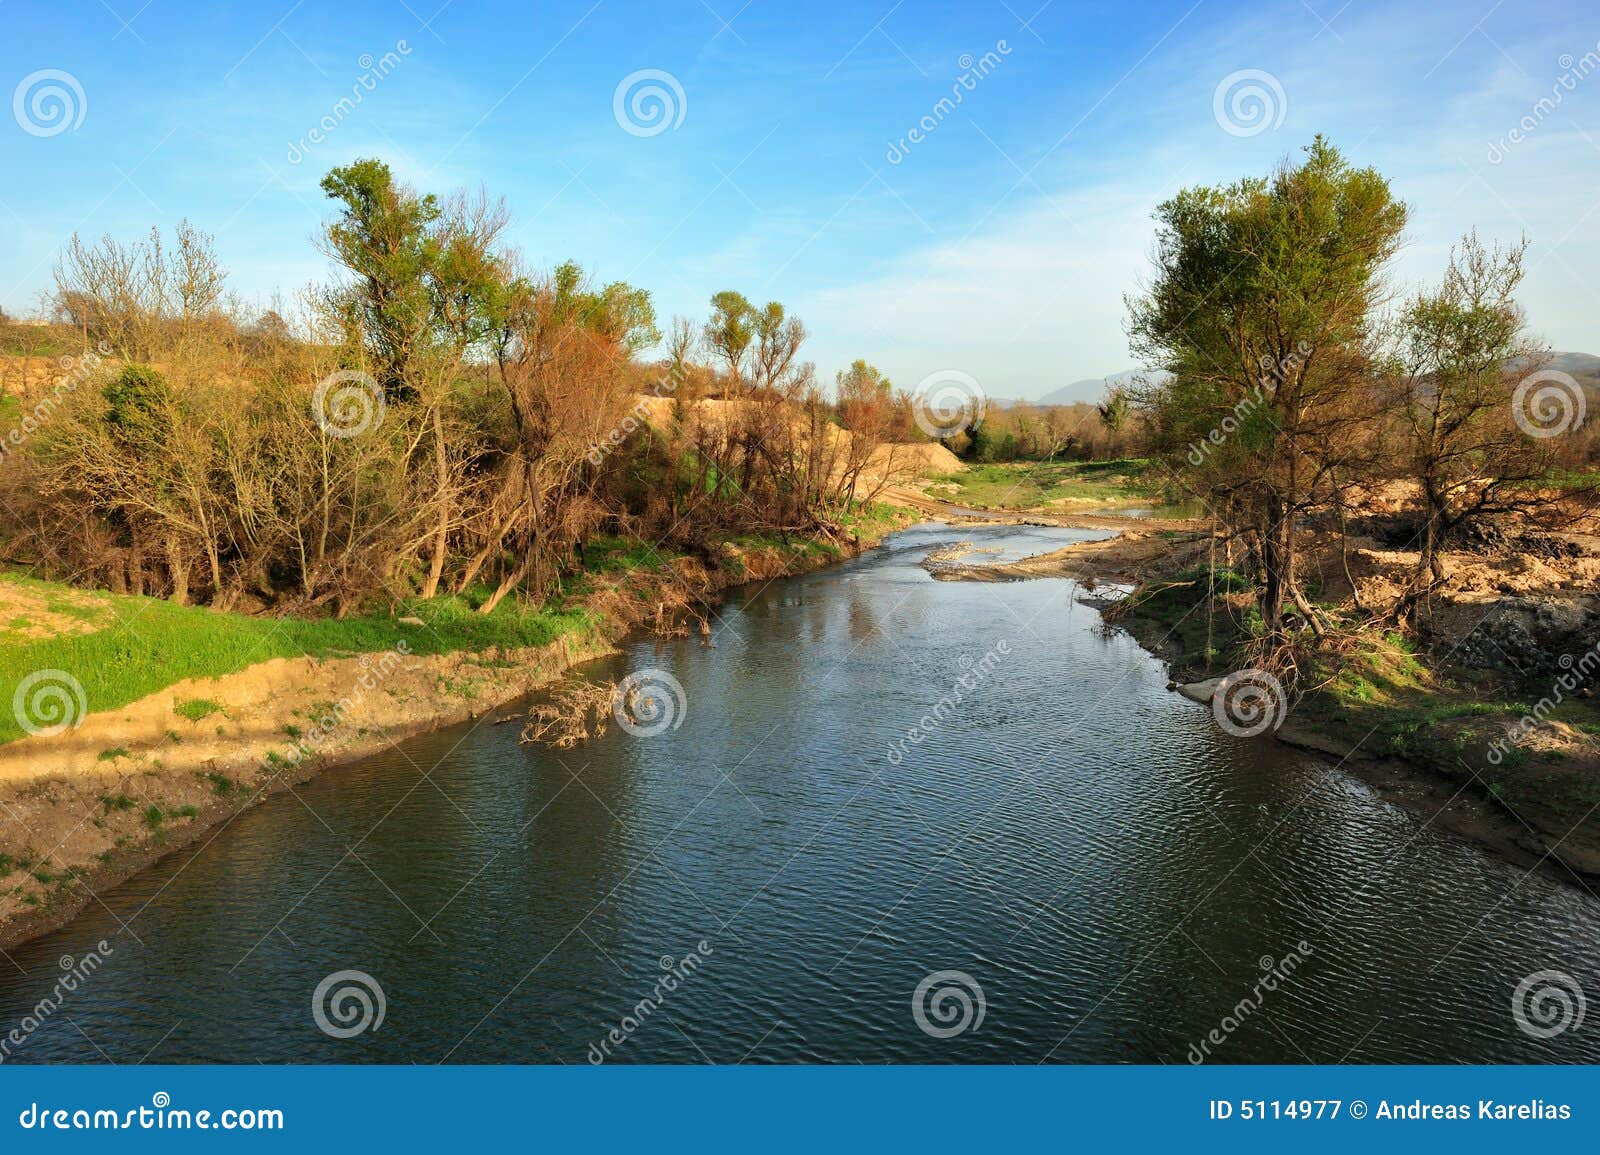 river in arcadia, greece